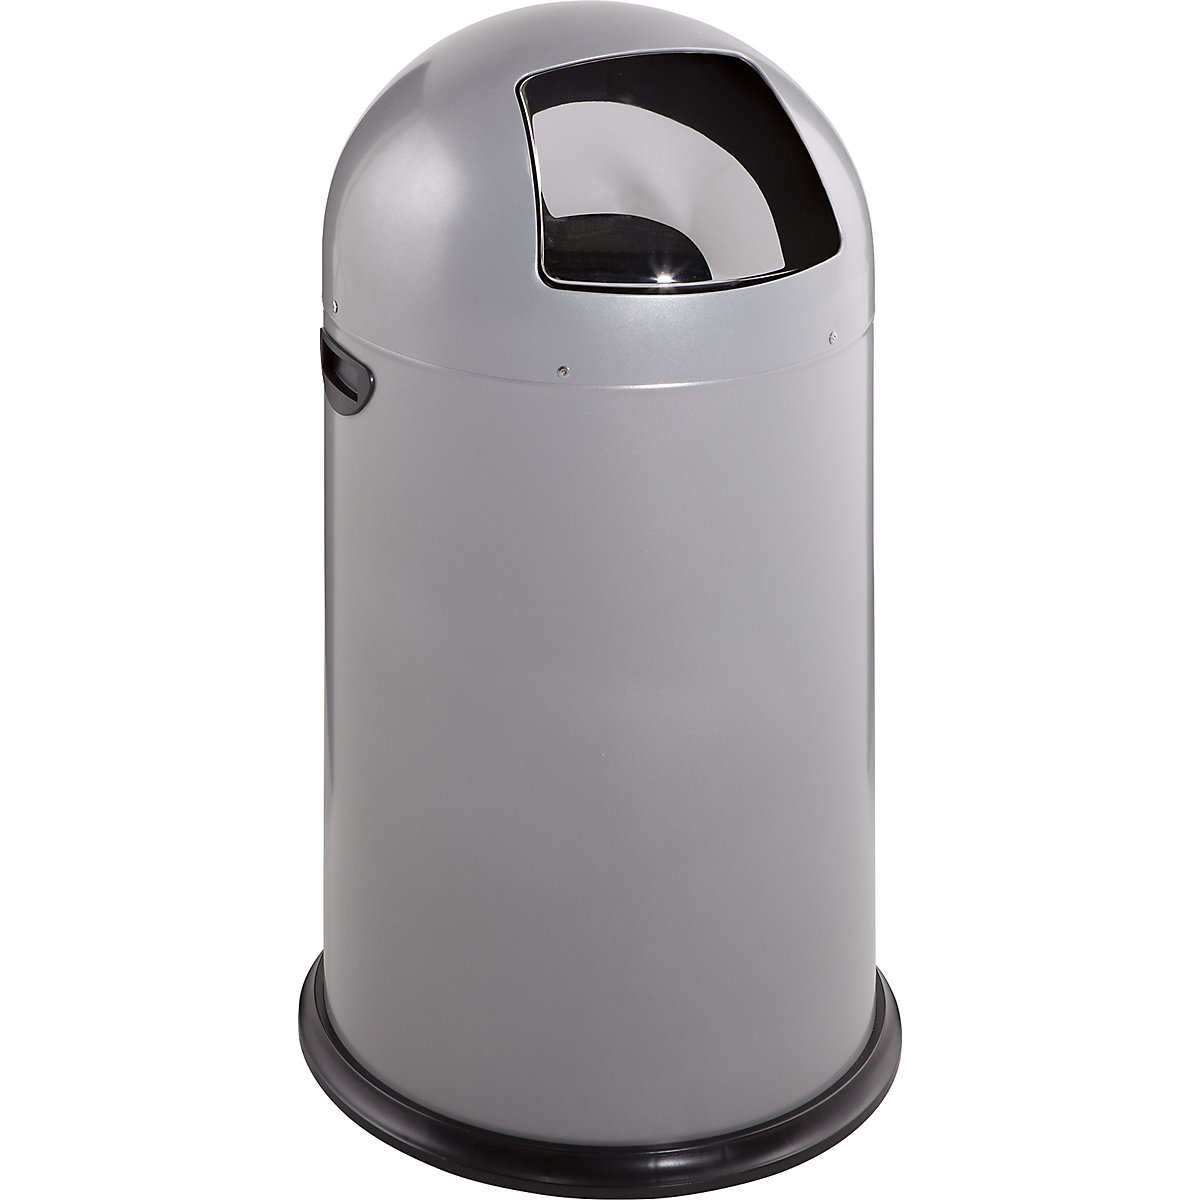 VAR – Odpadkový koš s funkcí Push, objem 40 l, výška 740 mm, stříbrná